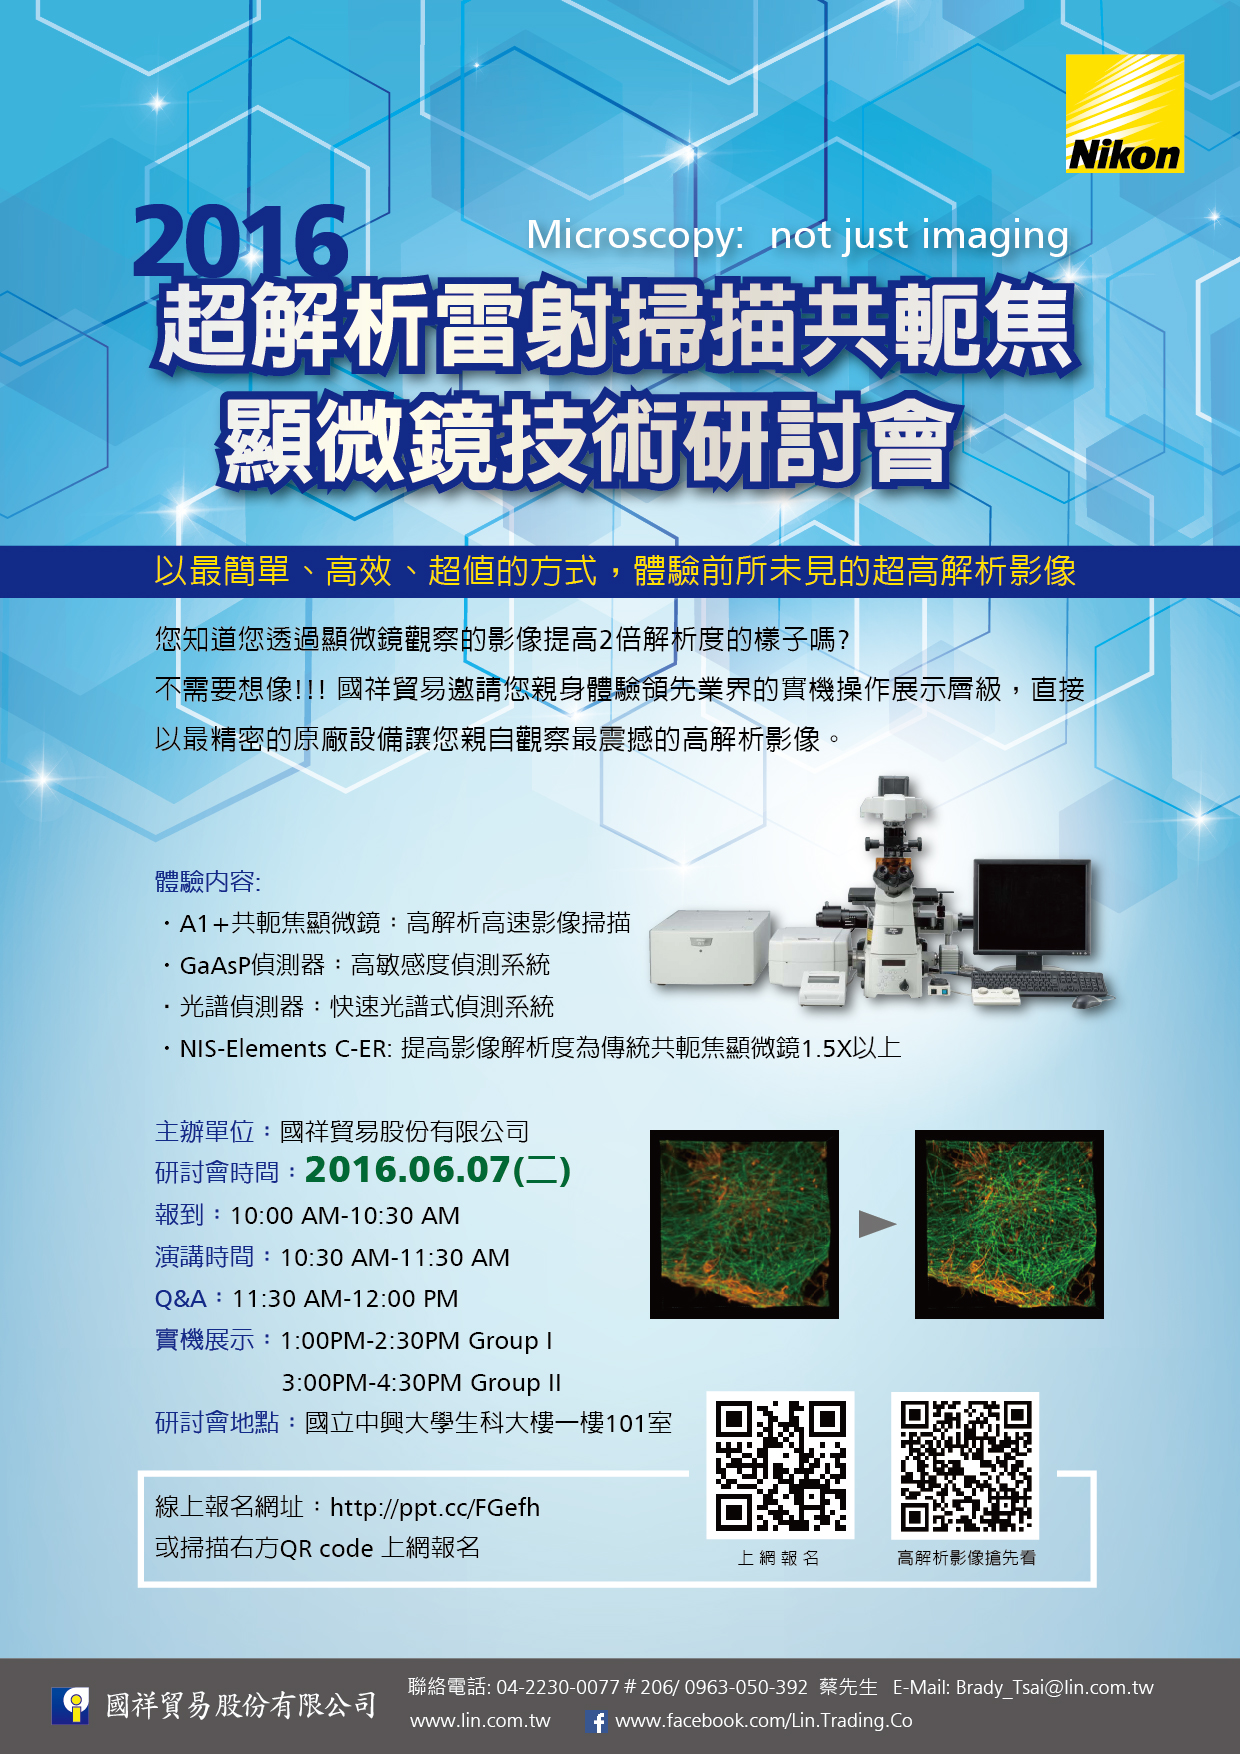 【機會難得!】2016 超解析雷射掃描共軛焦顯微鏡技術研討會